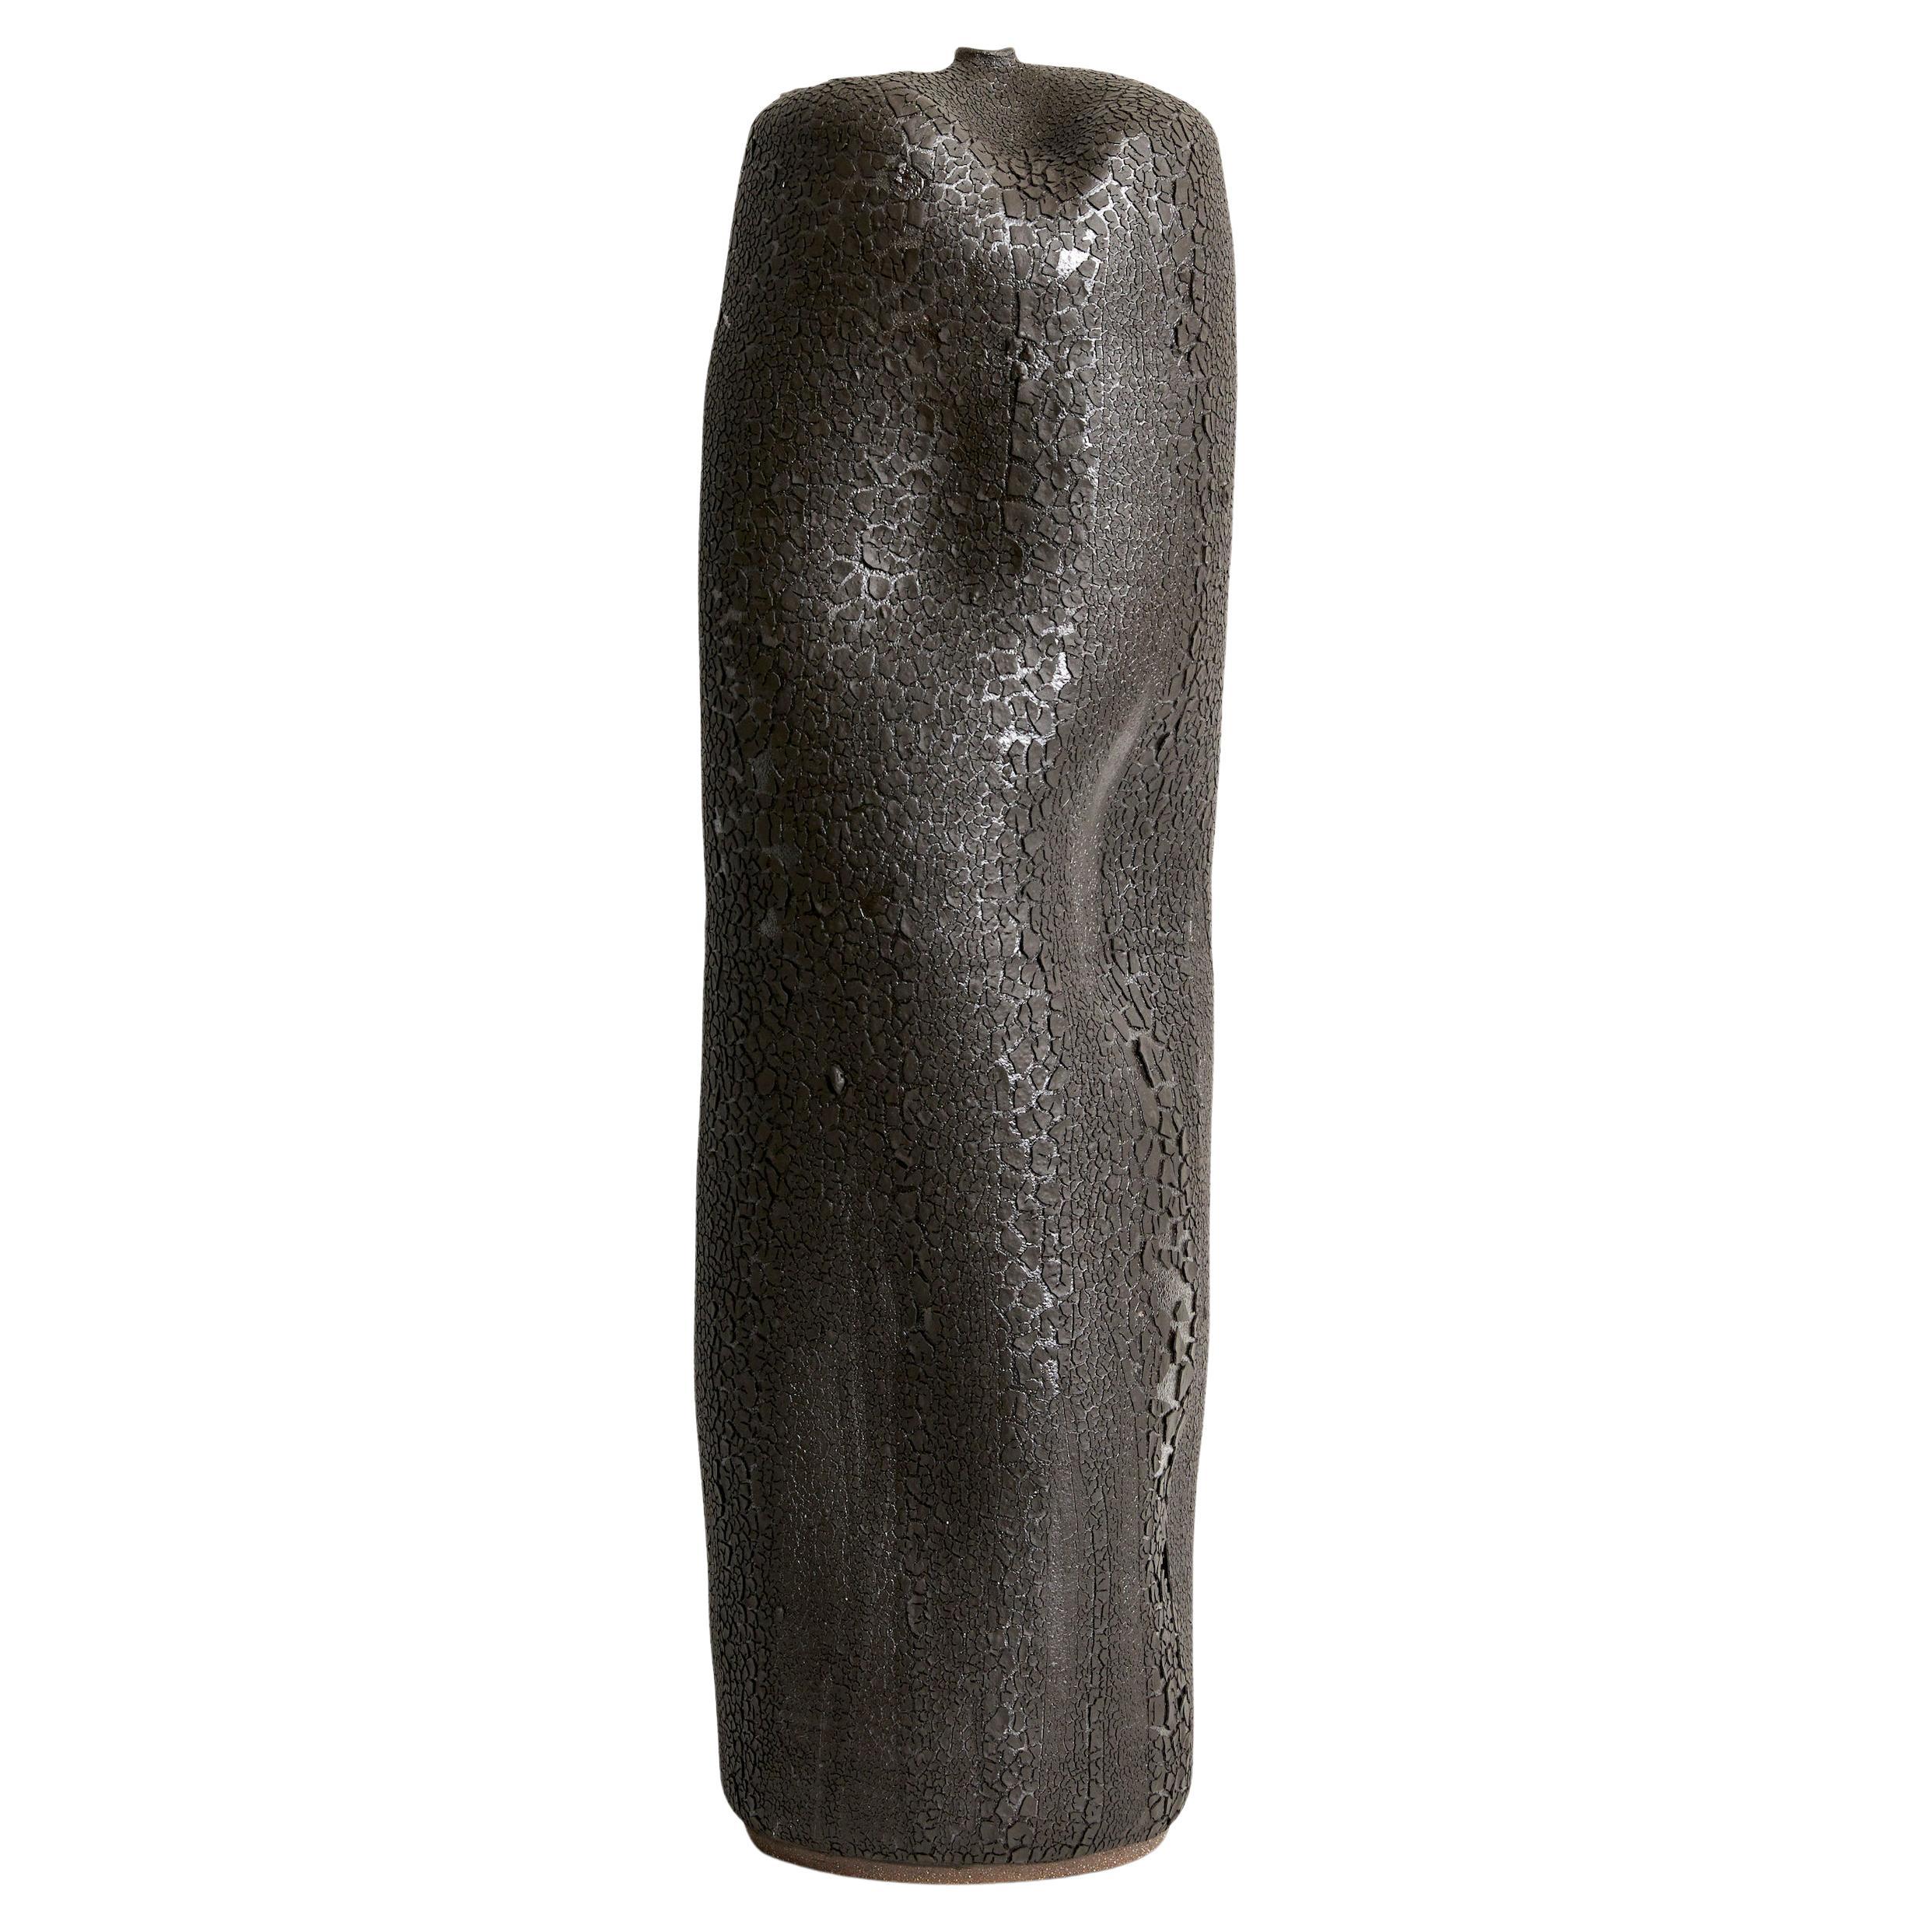 Grand vase Skoby Joe en céramique noire texturée mi-siècle moderne avec récipient Wabi Sabi